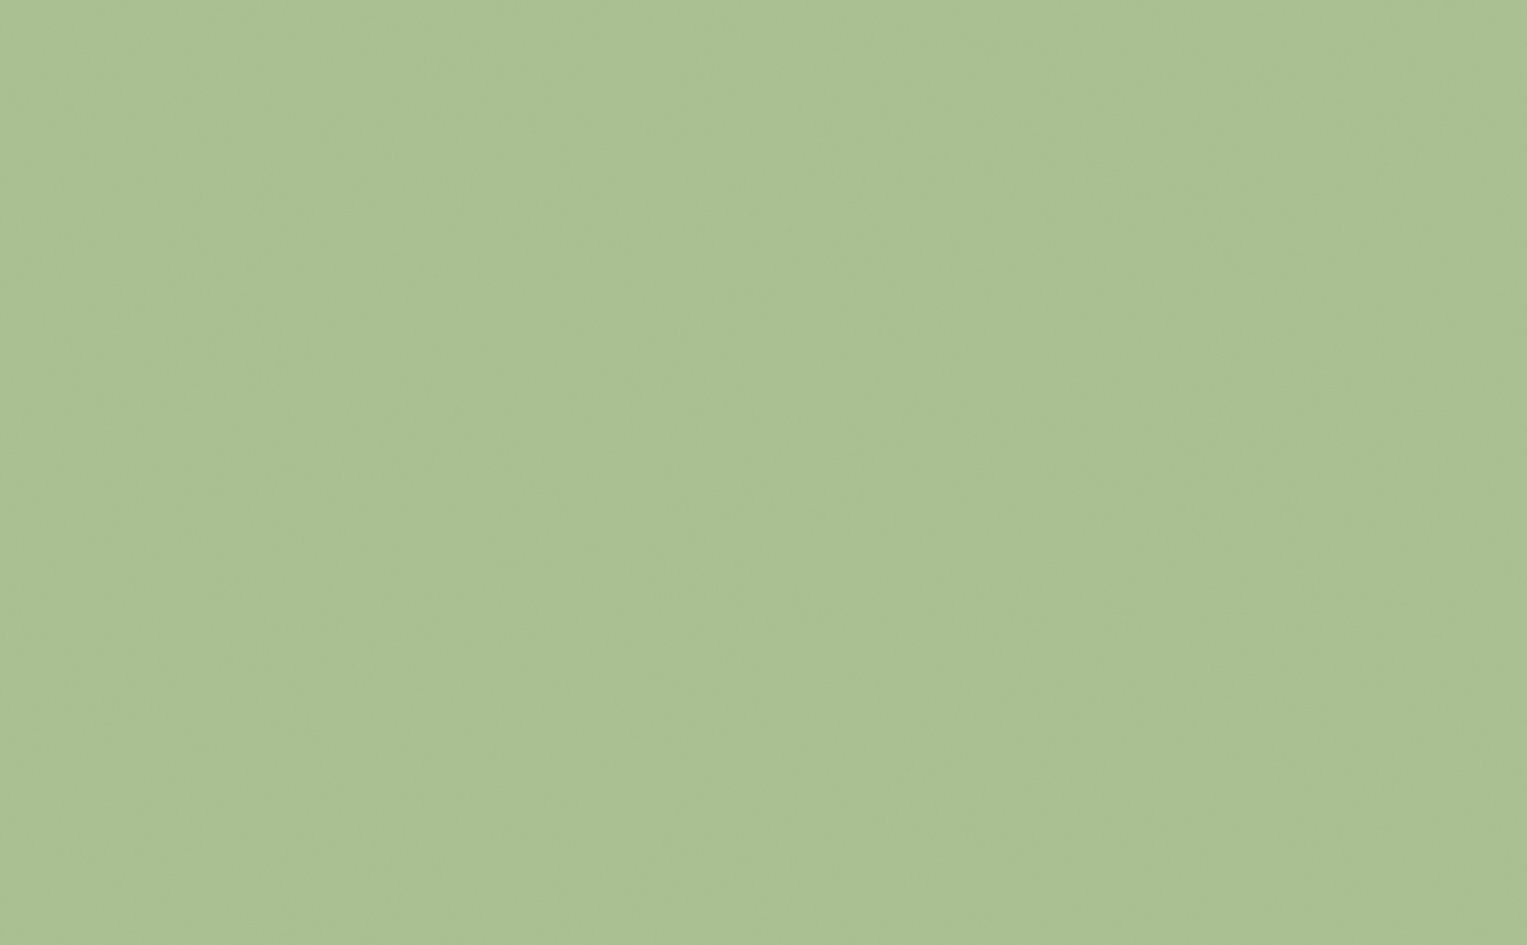 Pea Green&trade; - Absolute Matt Emulsion - 5 L